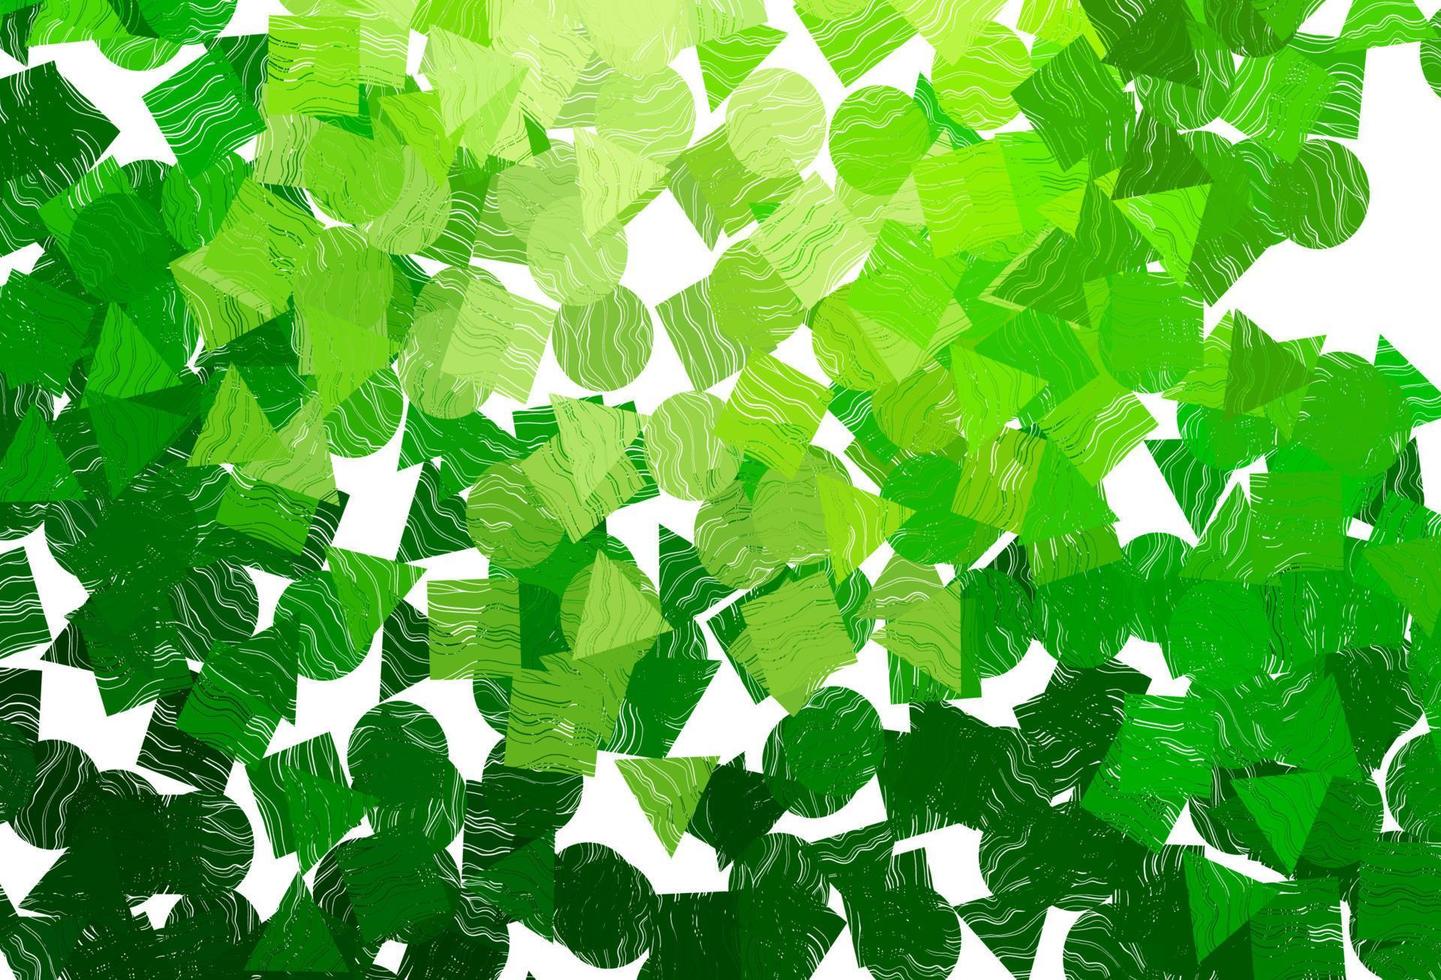 ljus grön vektor layout med cirklar, rader, rektanglar.